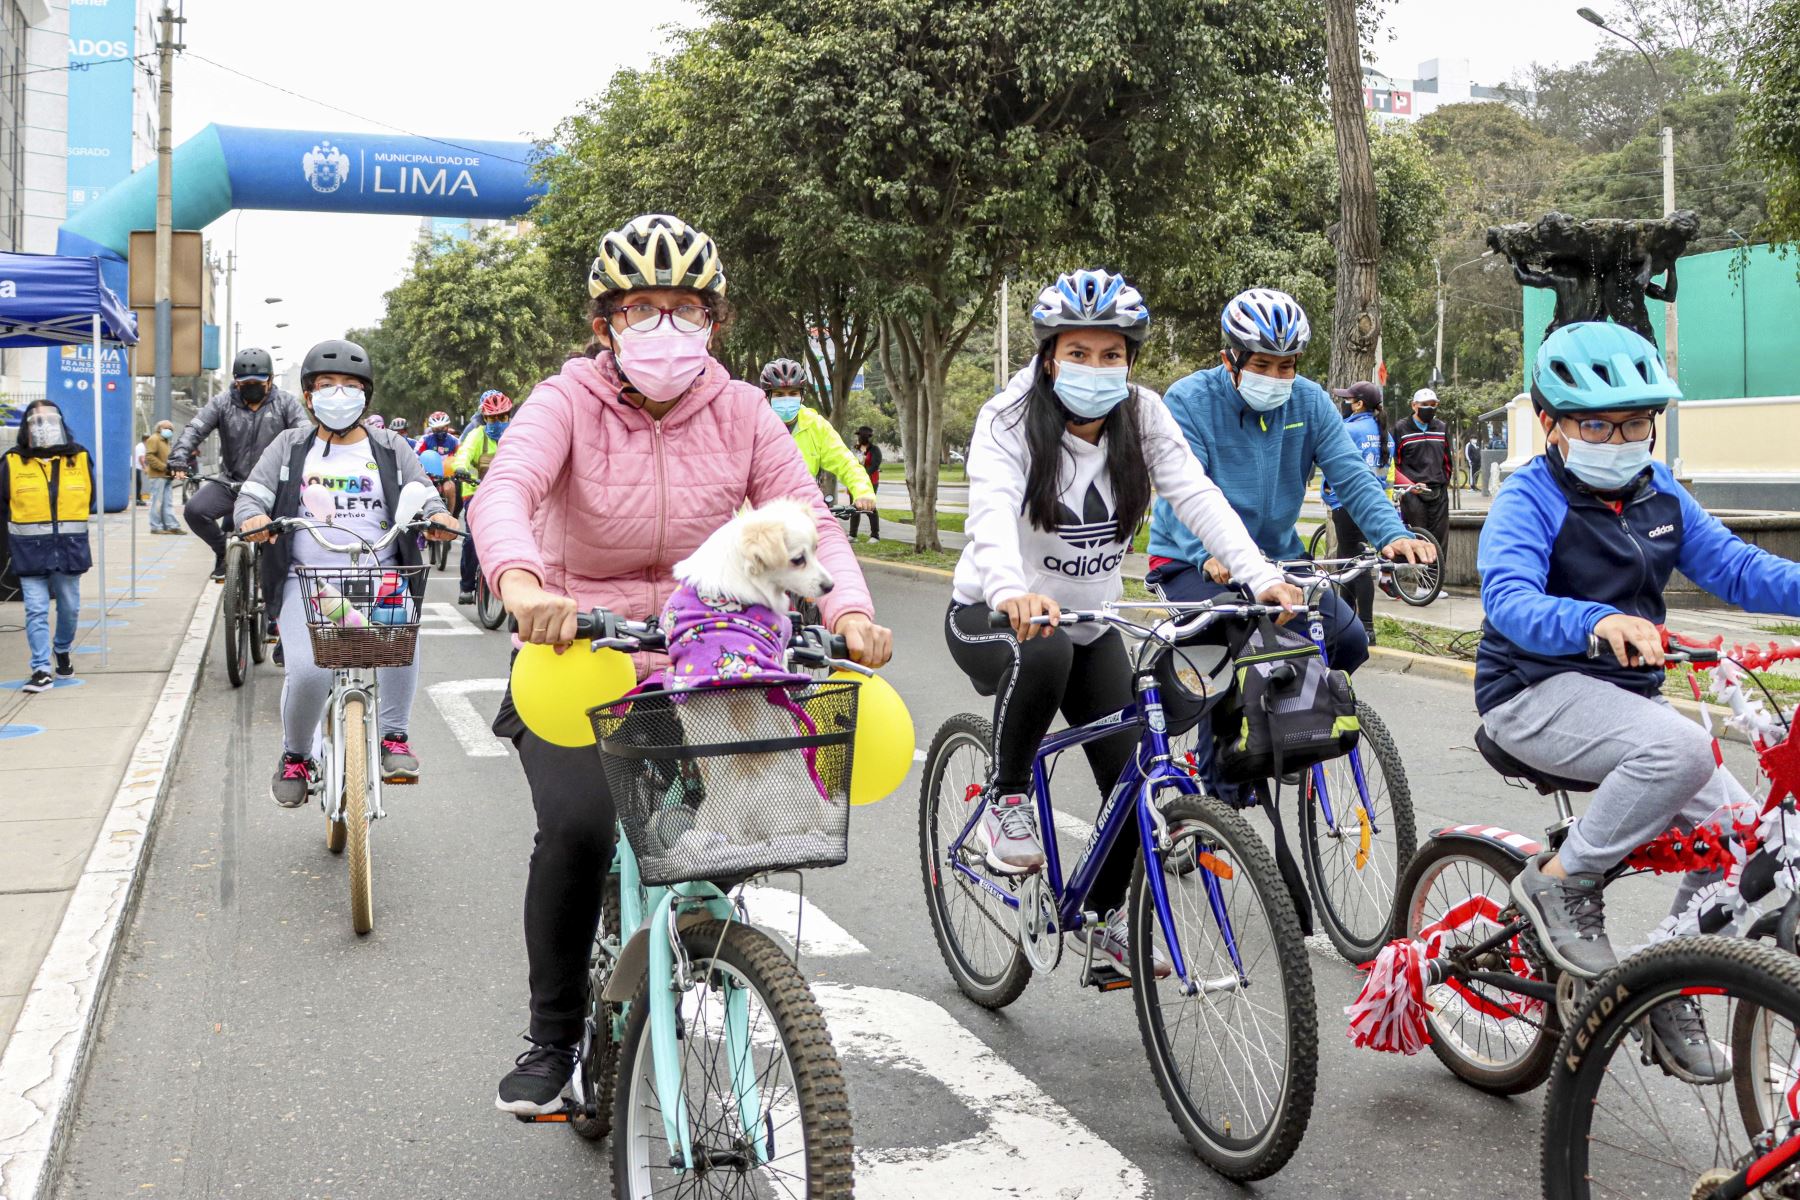 Este domingo 31 de octubre la población limeña podrá disfrutar de una mañana de paseo en bicicleta con la familia en el Centro de Lima. ANDINA/ Municipalidad de Lima